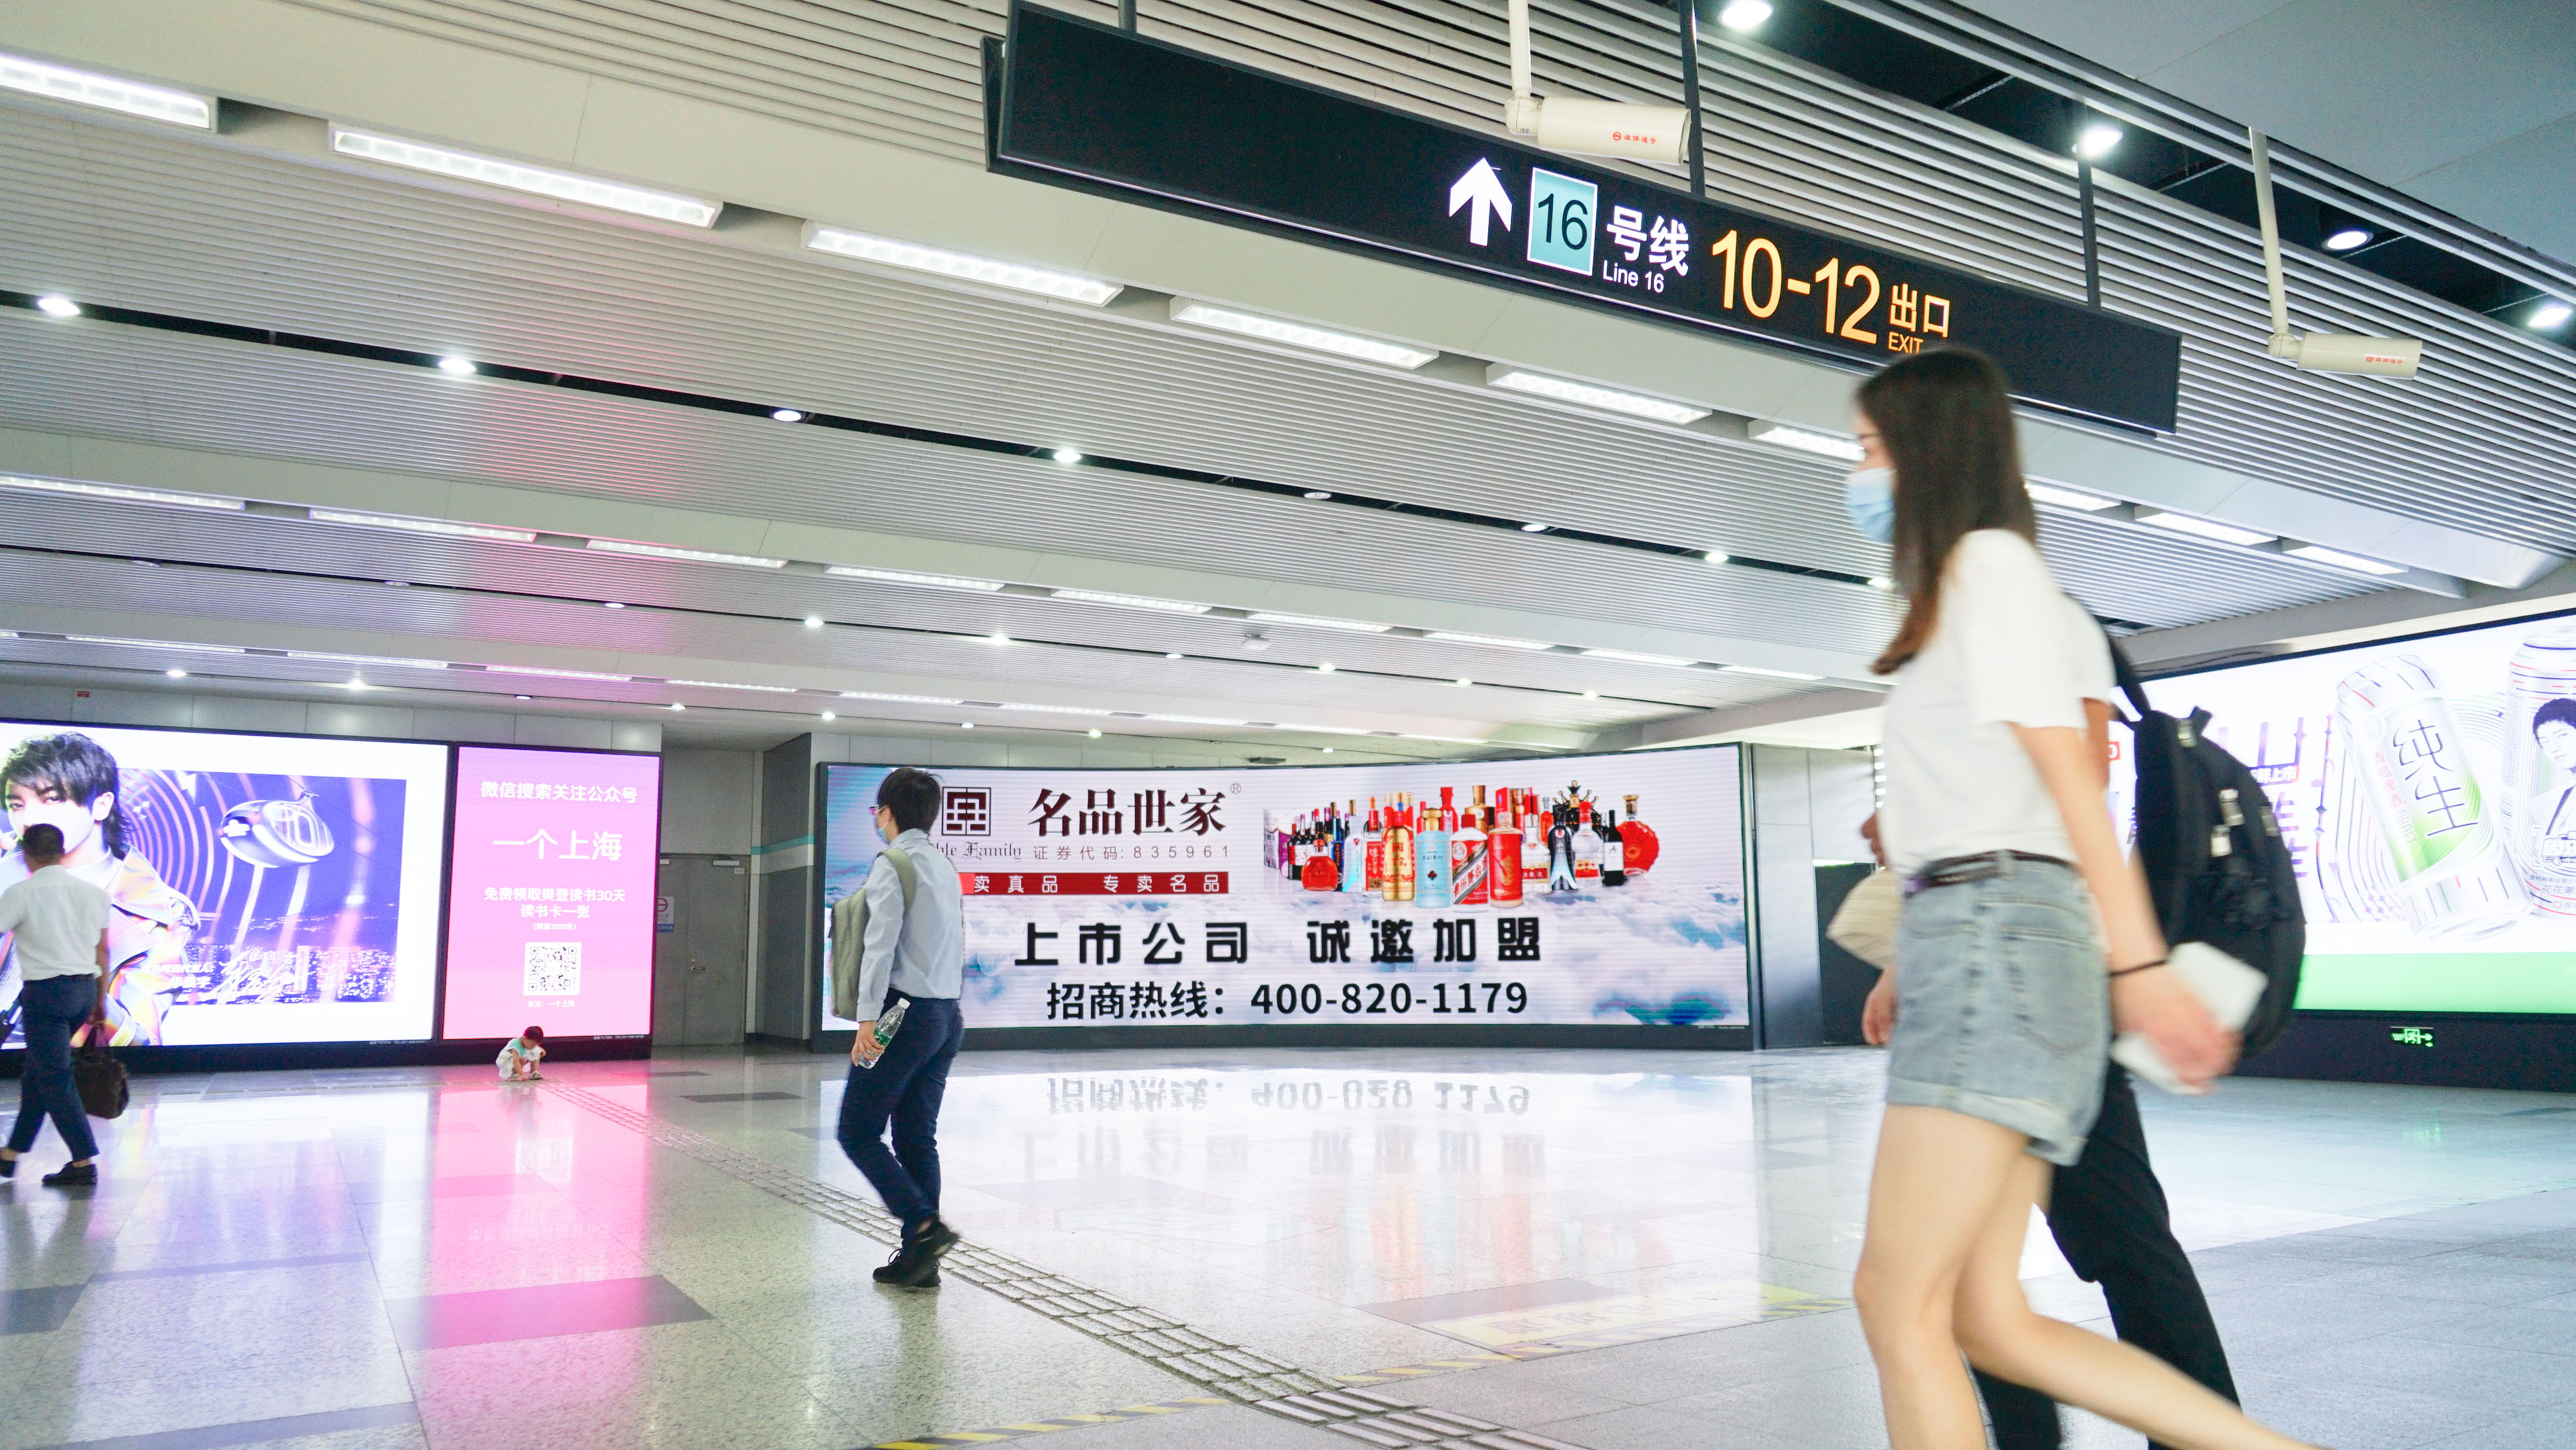 上海地铁广告8.jpg